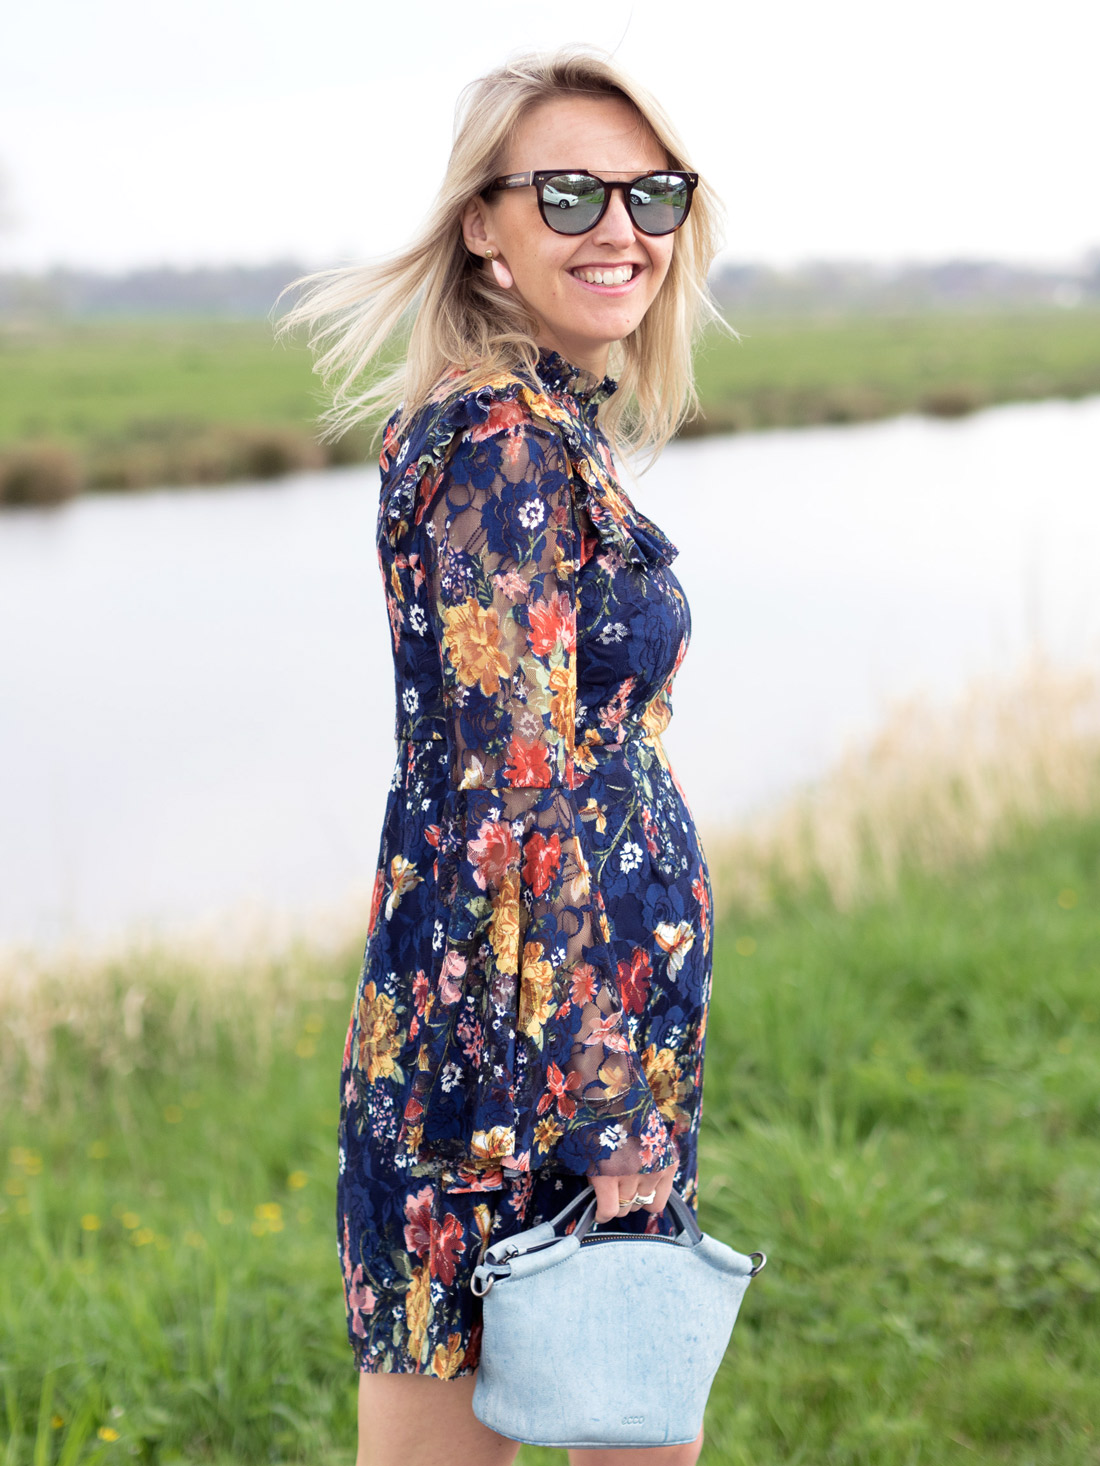 BAG-AT-YOU_Susanne_Bavinck_Bender_Blogger_Fashion_Amsterdam_By_Marinke_Davelaar-pregnancy-style